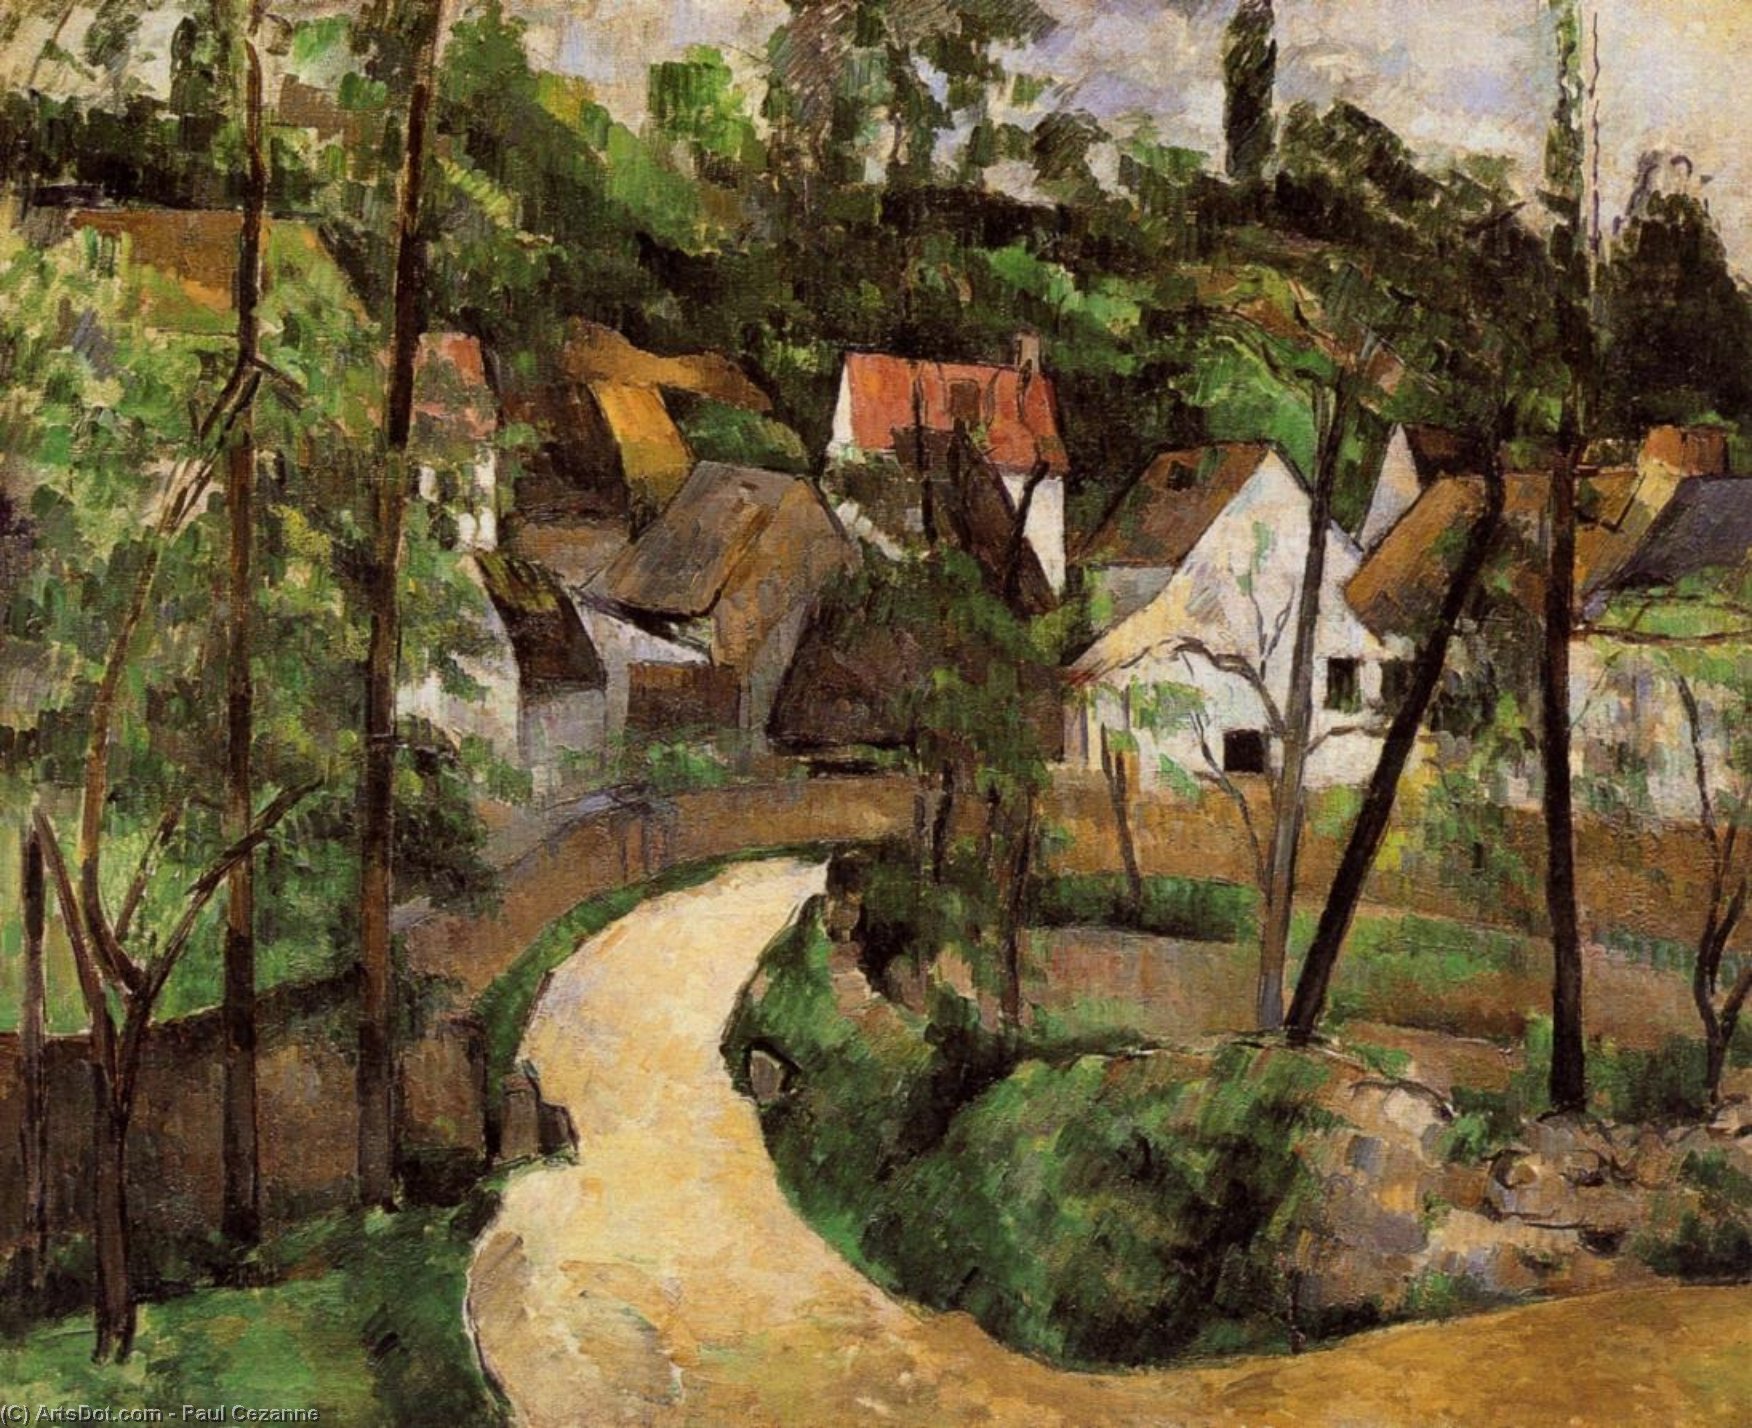 WikiOO.org - Encyclopedia of Fine Arts - Lukisan, Artwork Paul Cezanne - A Turn in the Road